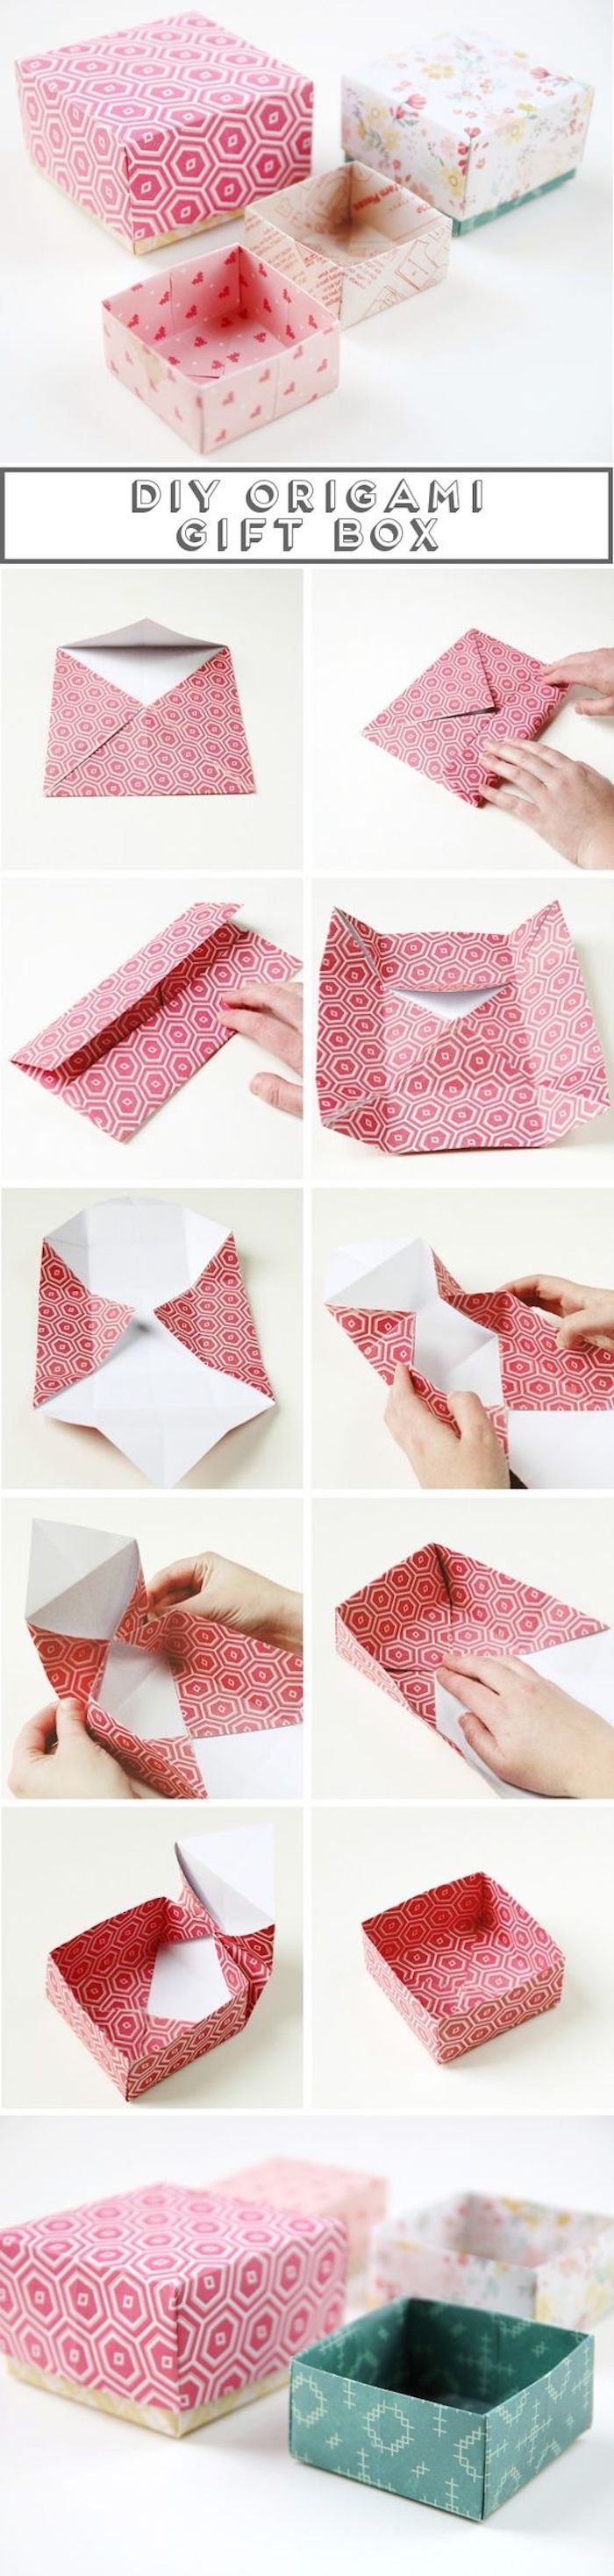 eine Origami Schachtel selber machen aus einer rosa Stück Papier - Pappschachteln